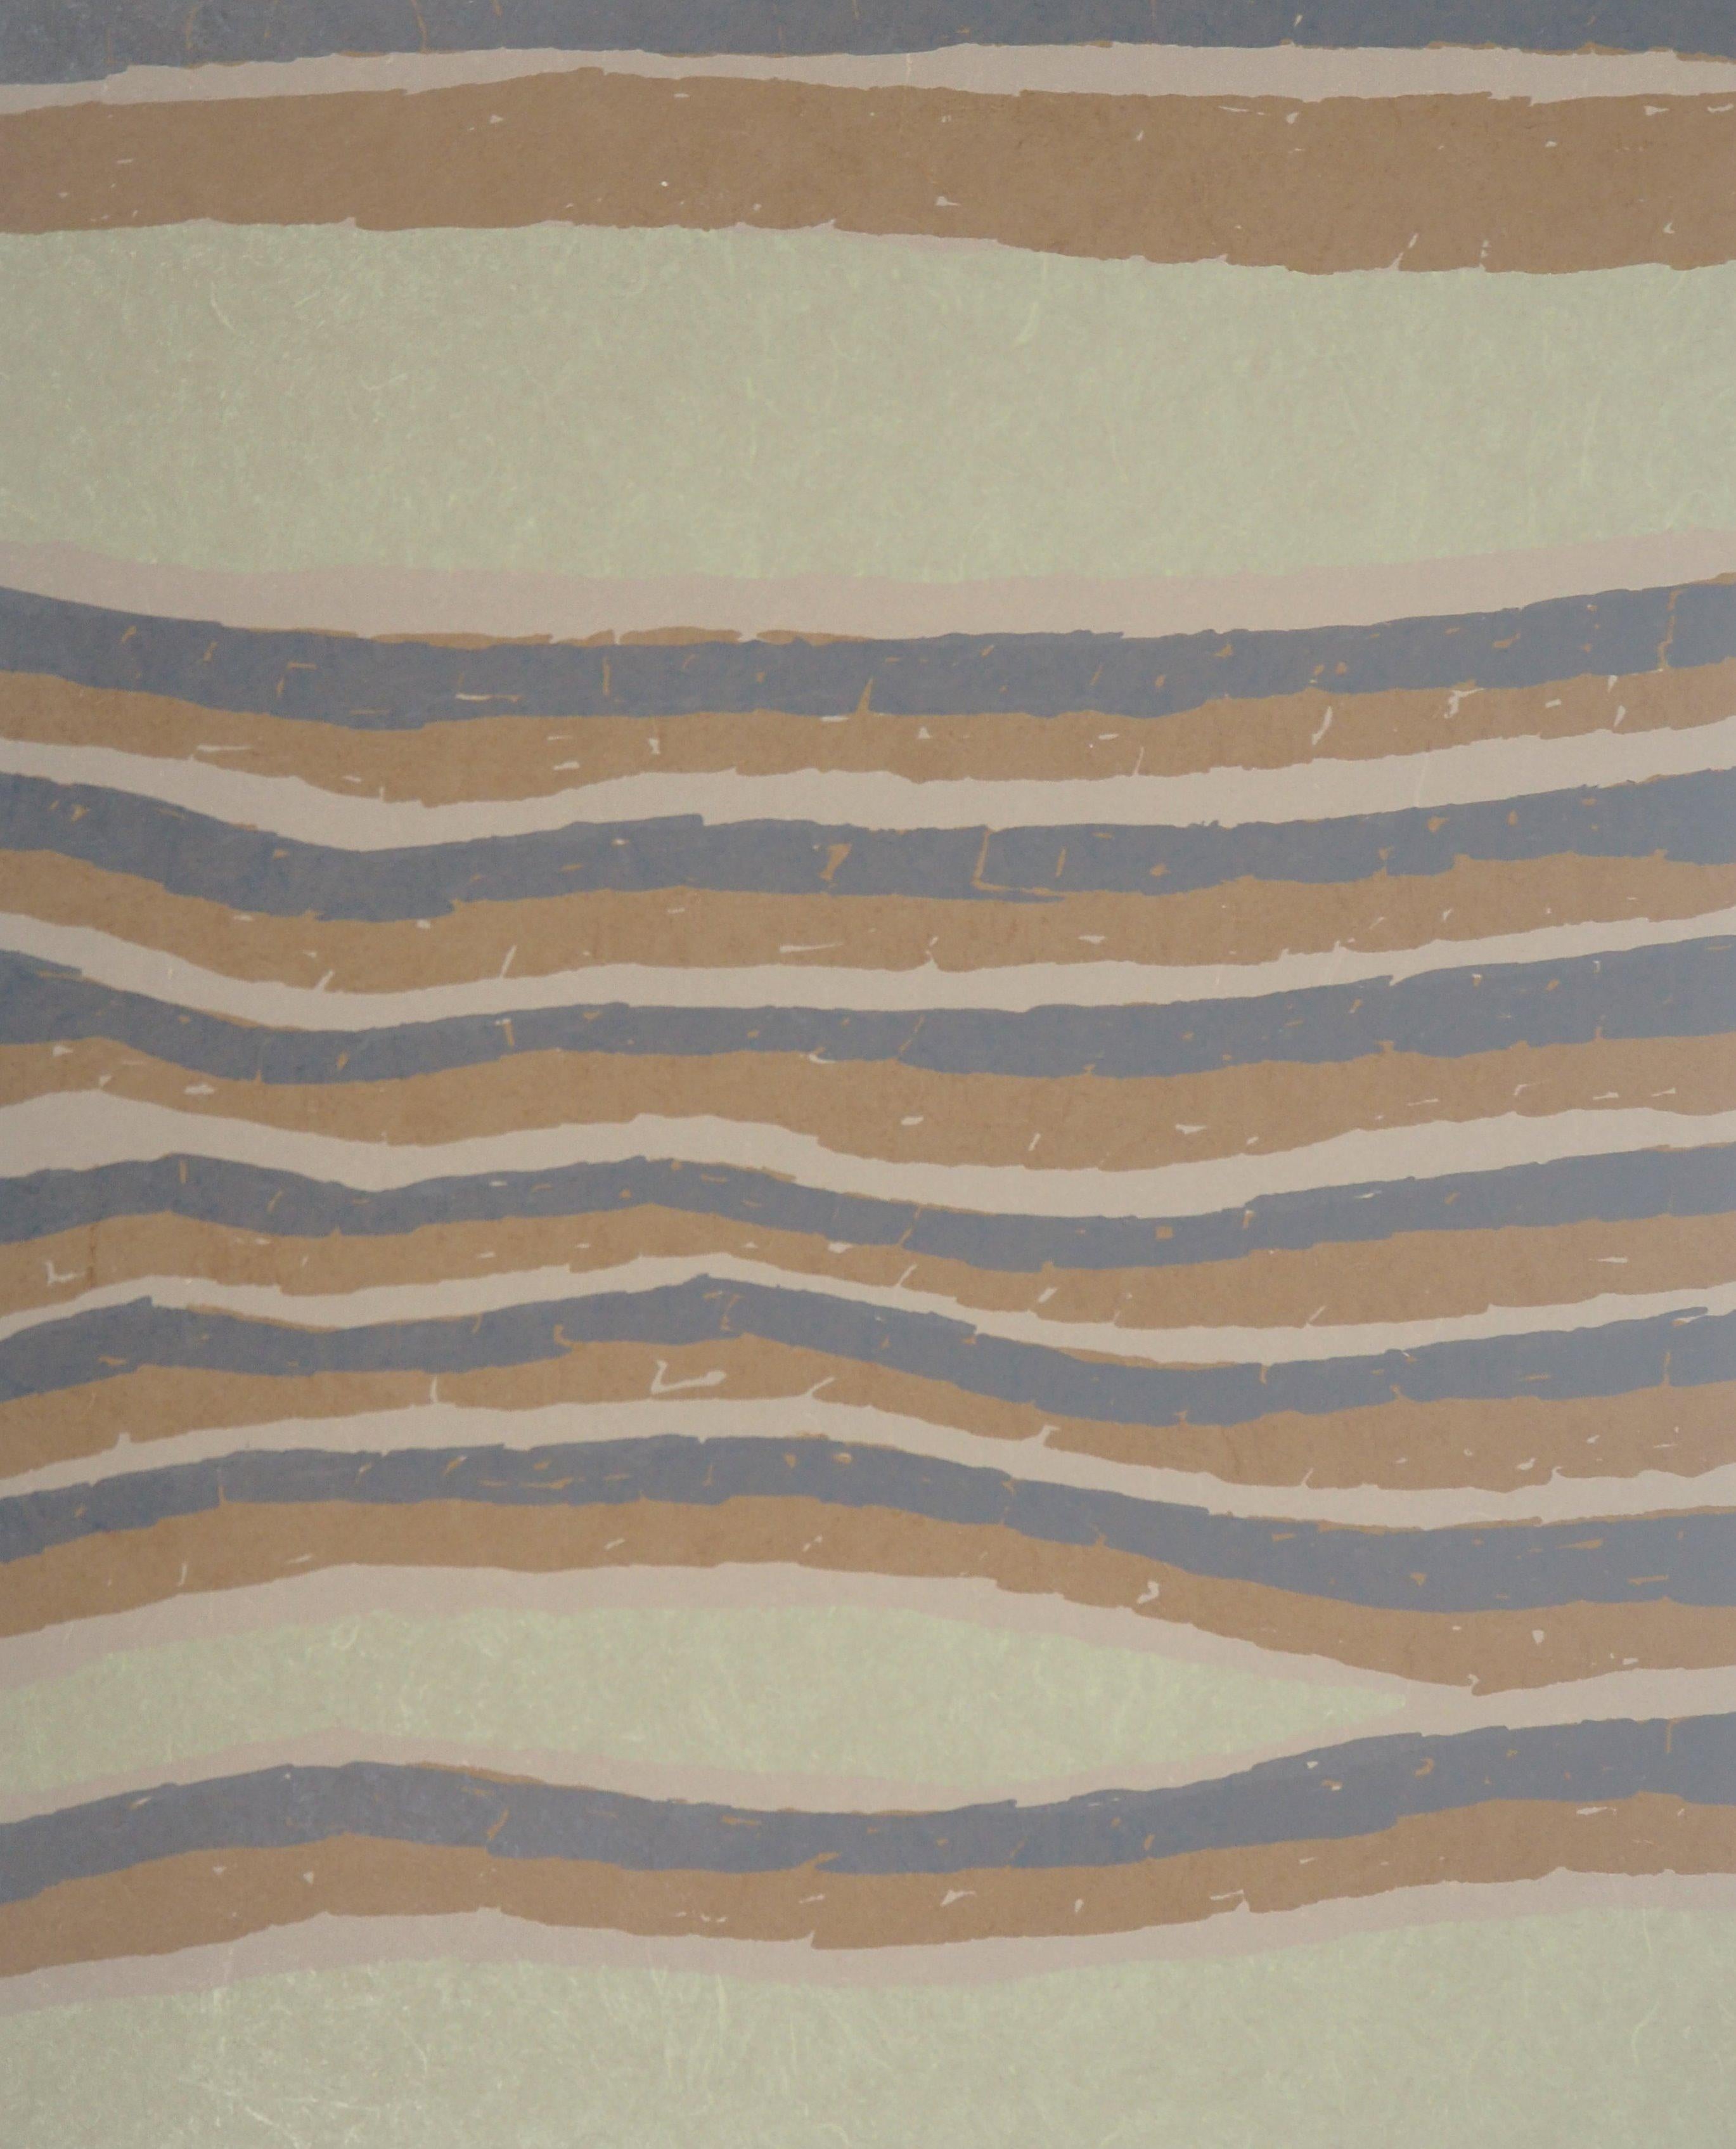 Dessous de sable surréaliste - Lithographie originale signée à la main - Print de Raoul Ubac